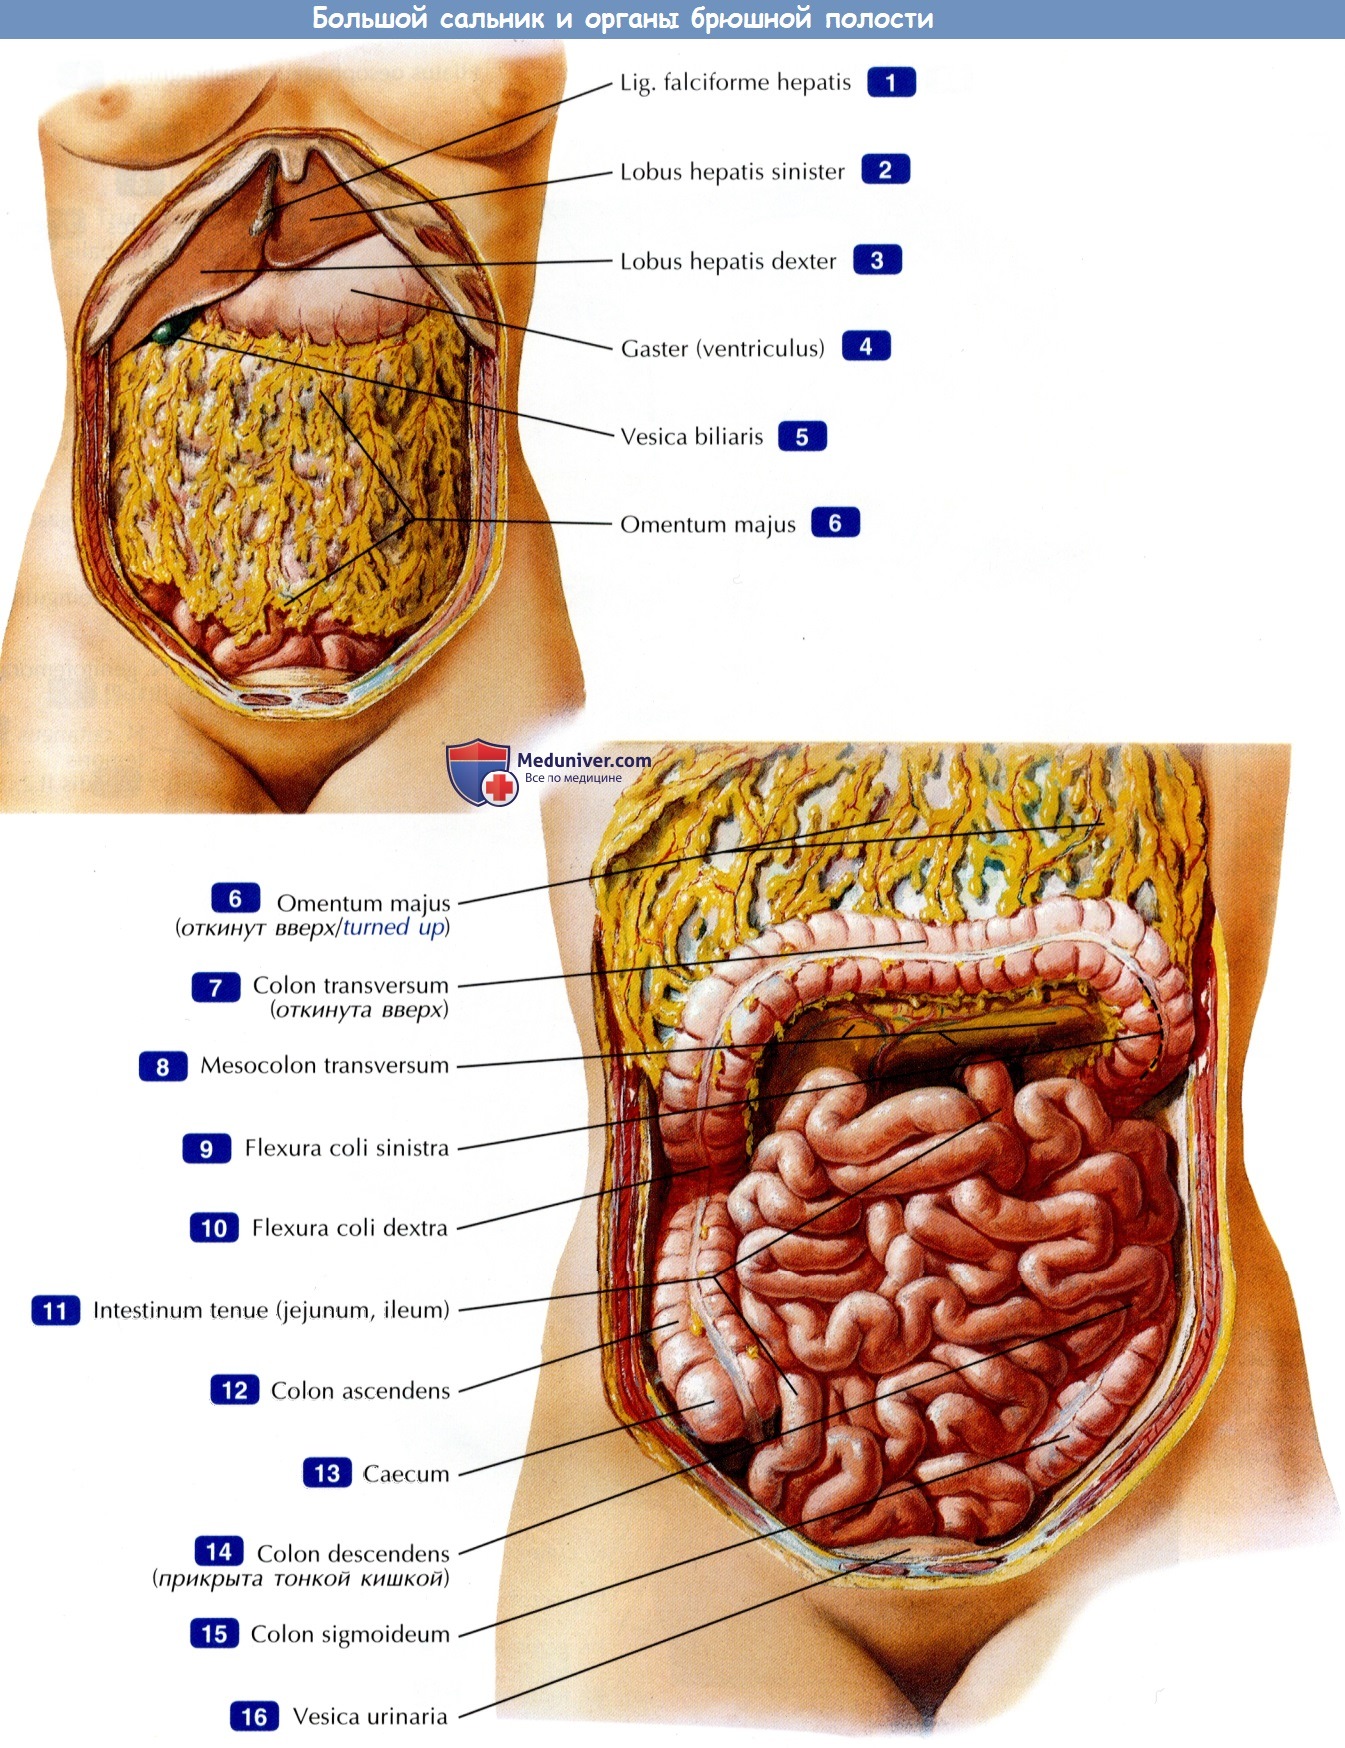 МРТ брюшной полости: какие органы проверяют